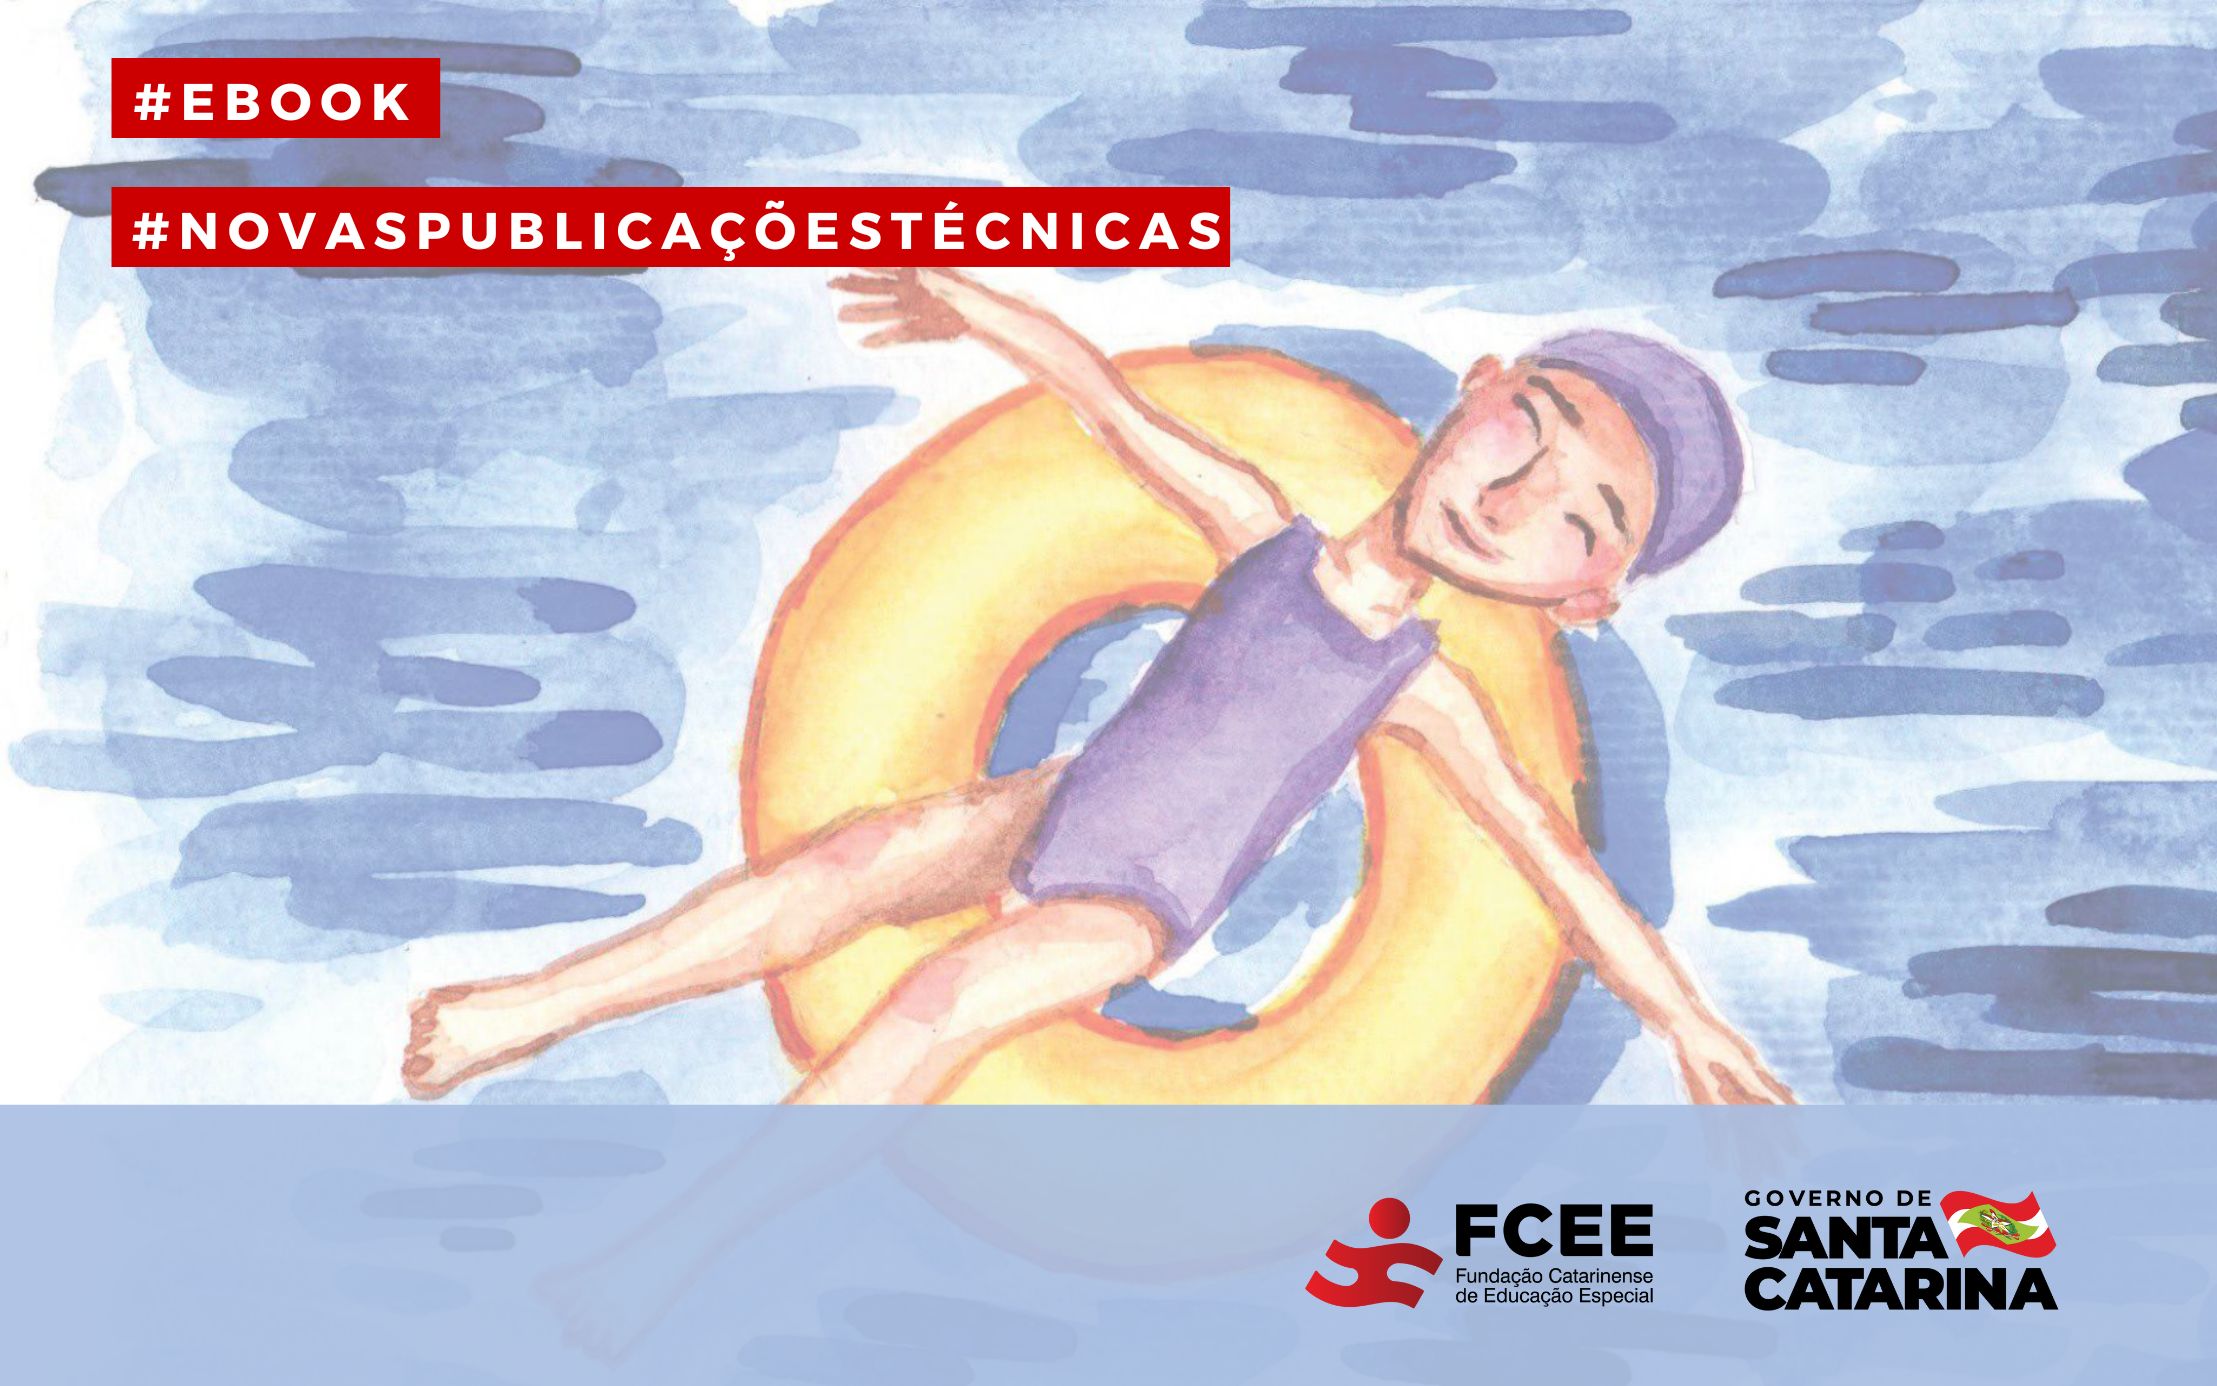 imagem desenho de menina em boia de piscina e texto: #ebook #novaspublicacoestecnicas